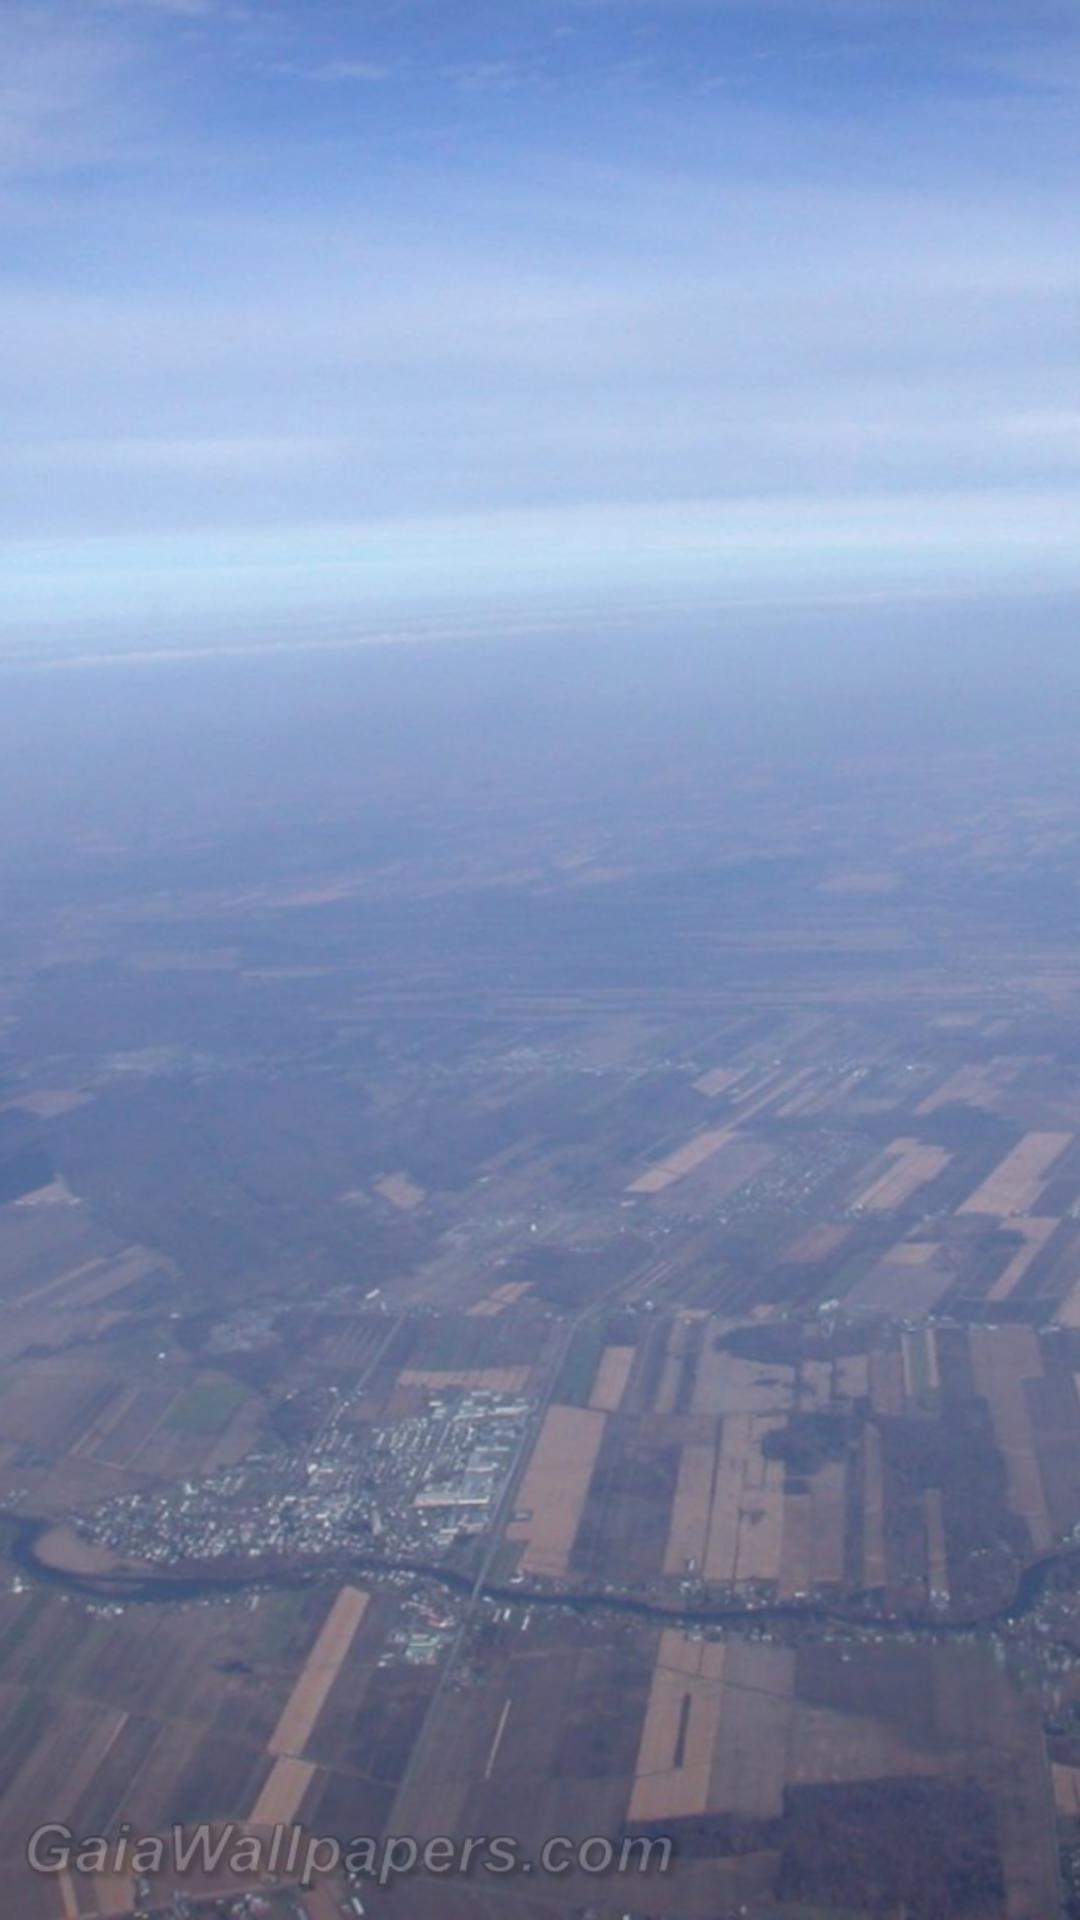 Vue aérienne de la Montérégie et du Mont Yamaska à 9000 pieds - Fonds d'écran gratuits